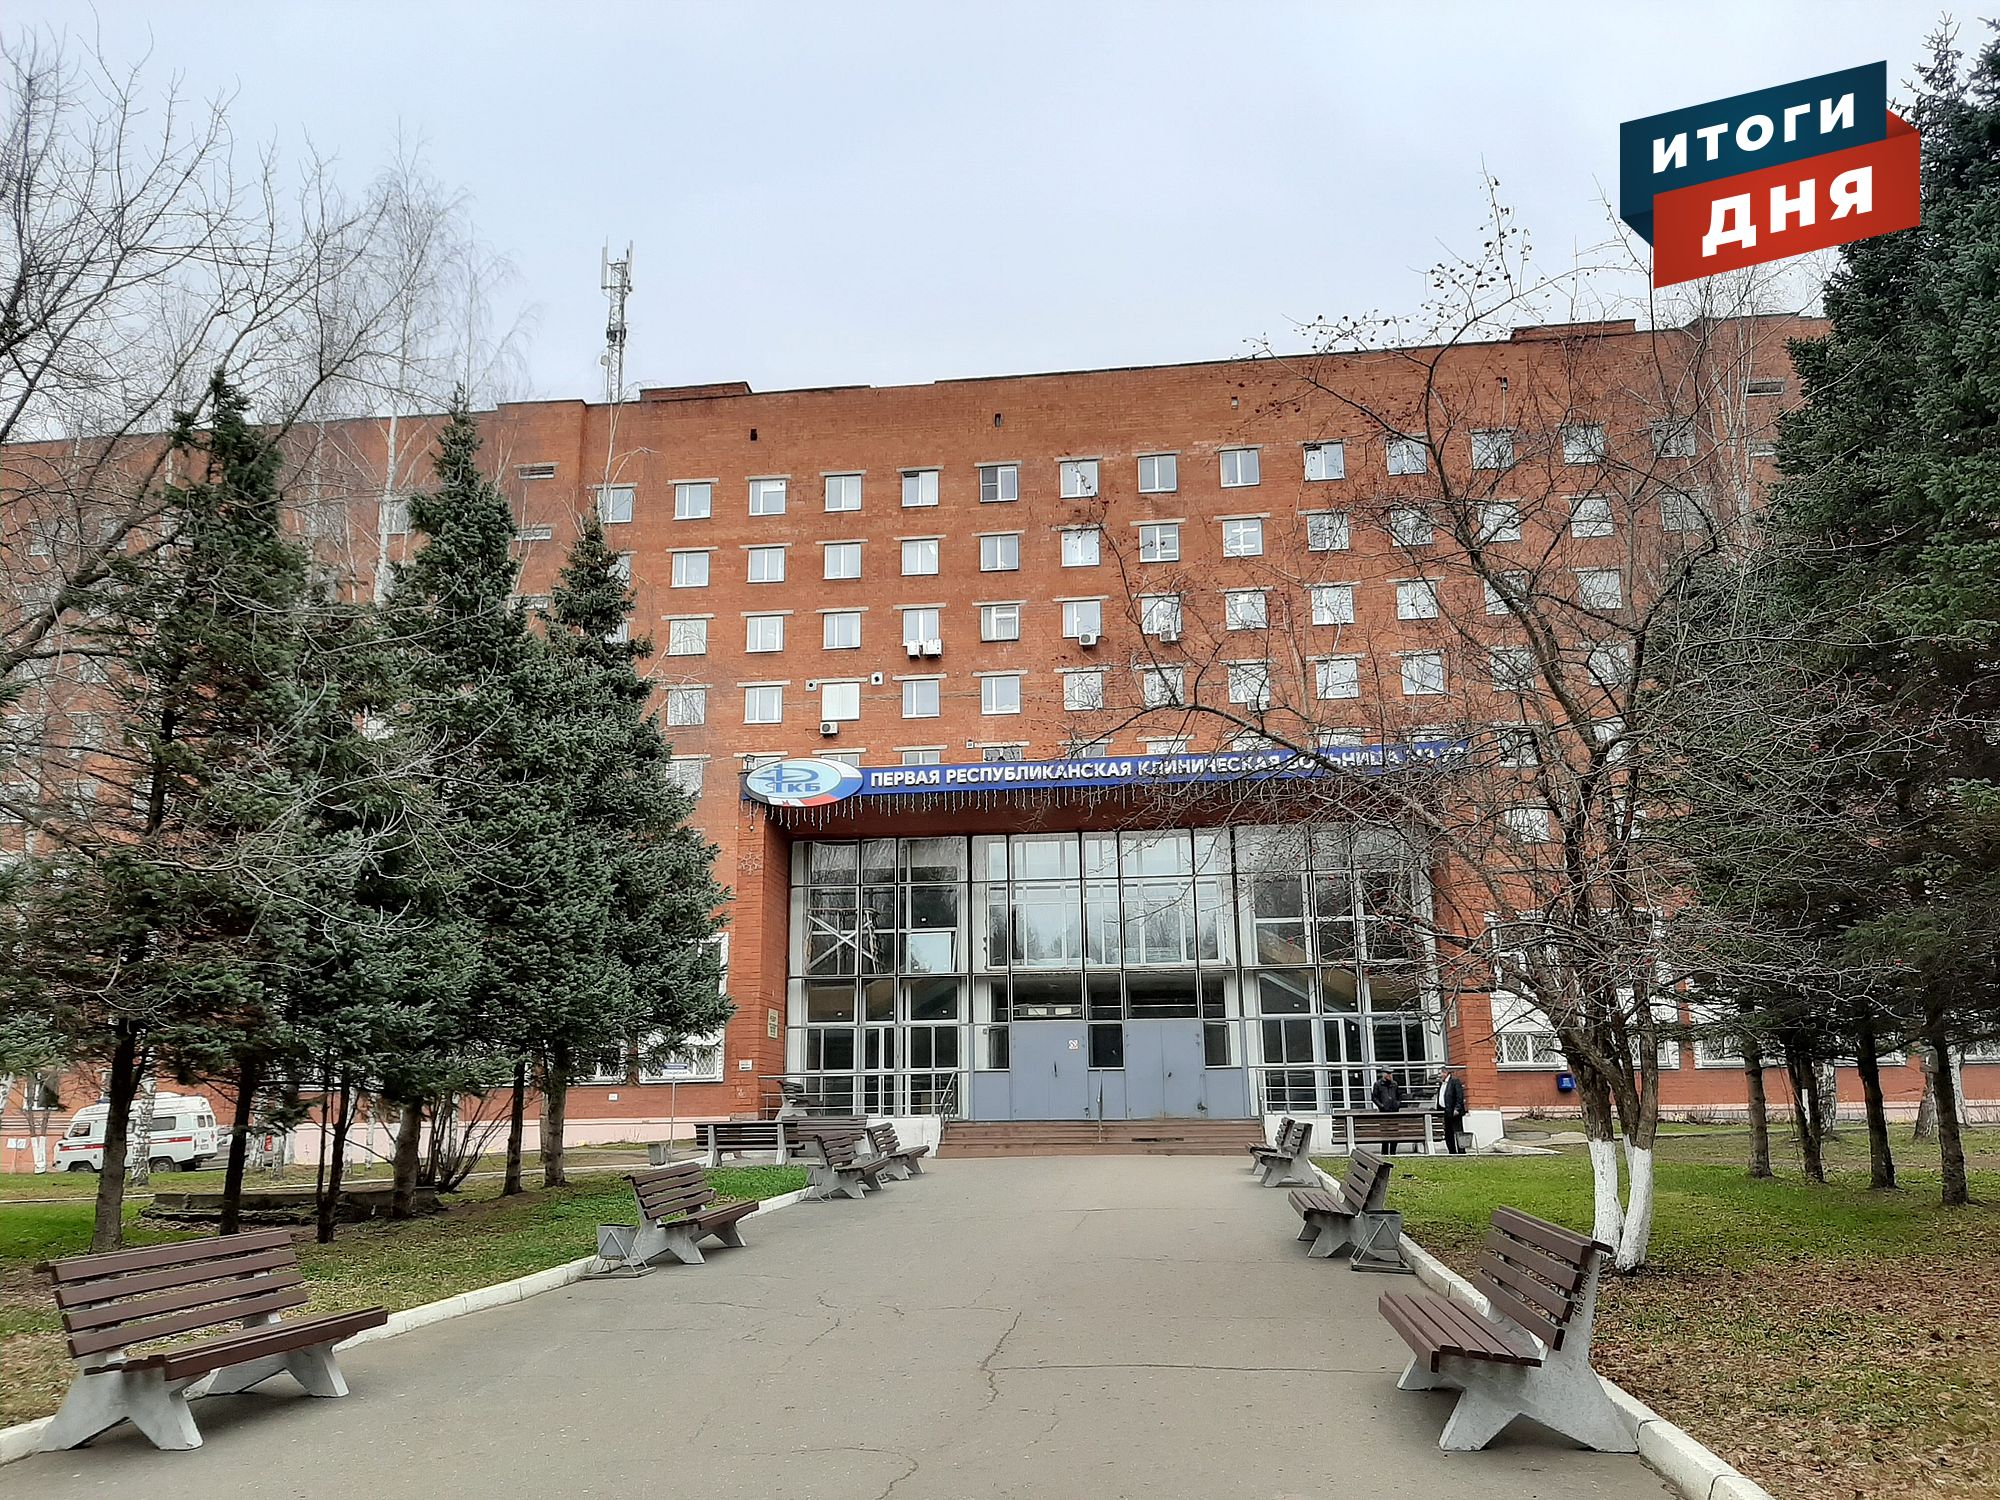 Итоги дня: коронавирус в 1 РКБ в Ижевске, кешбэк за турпутевку в Удмуртию и рекордное количество осадков